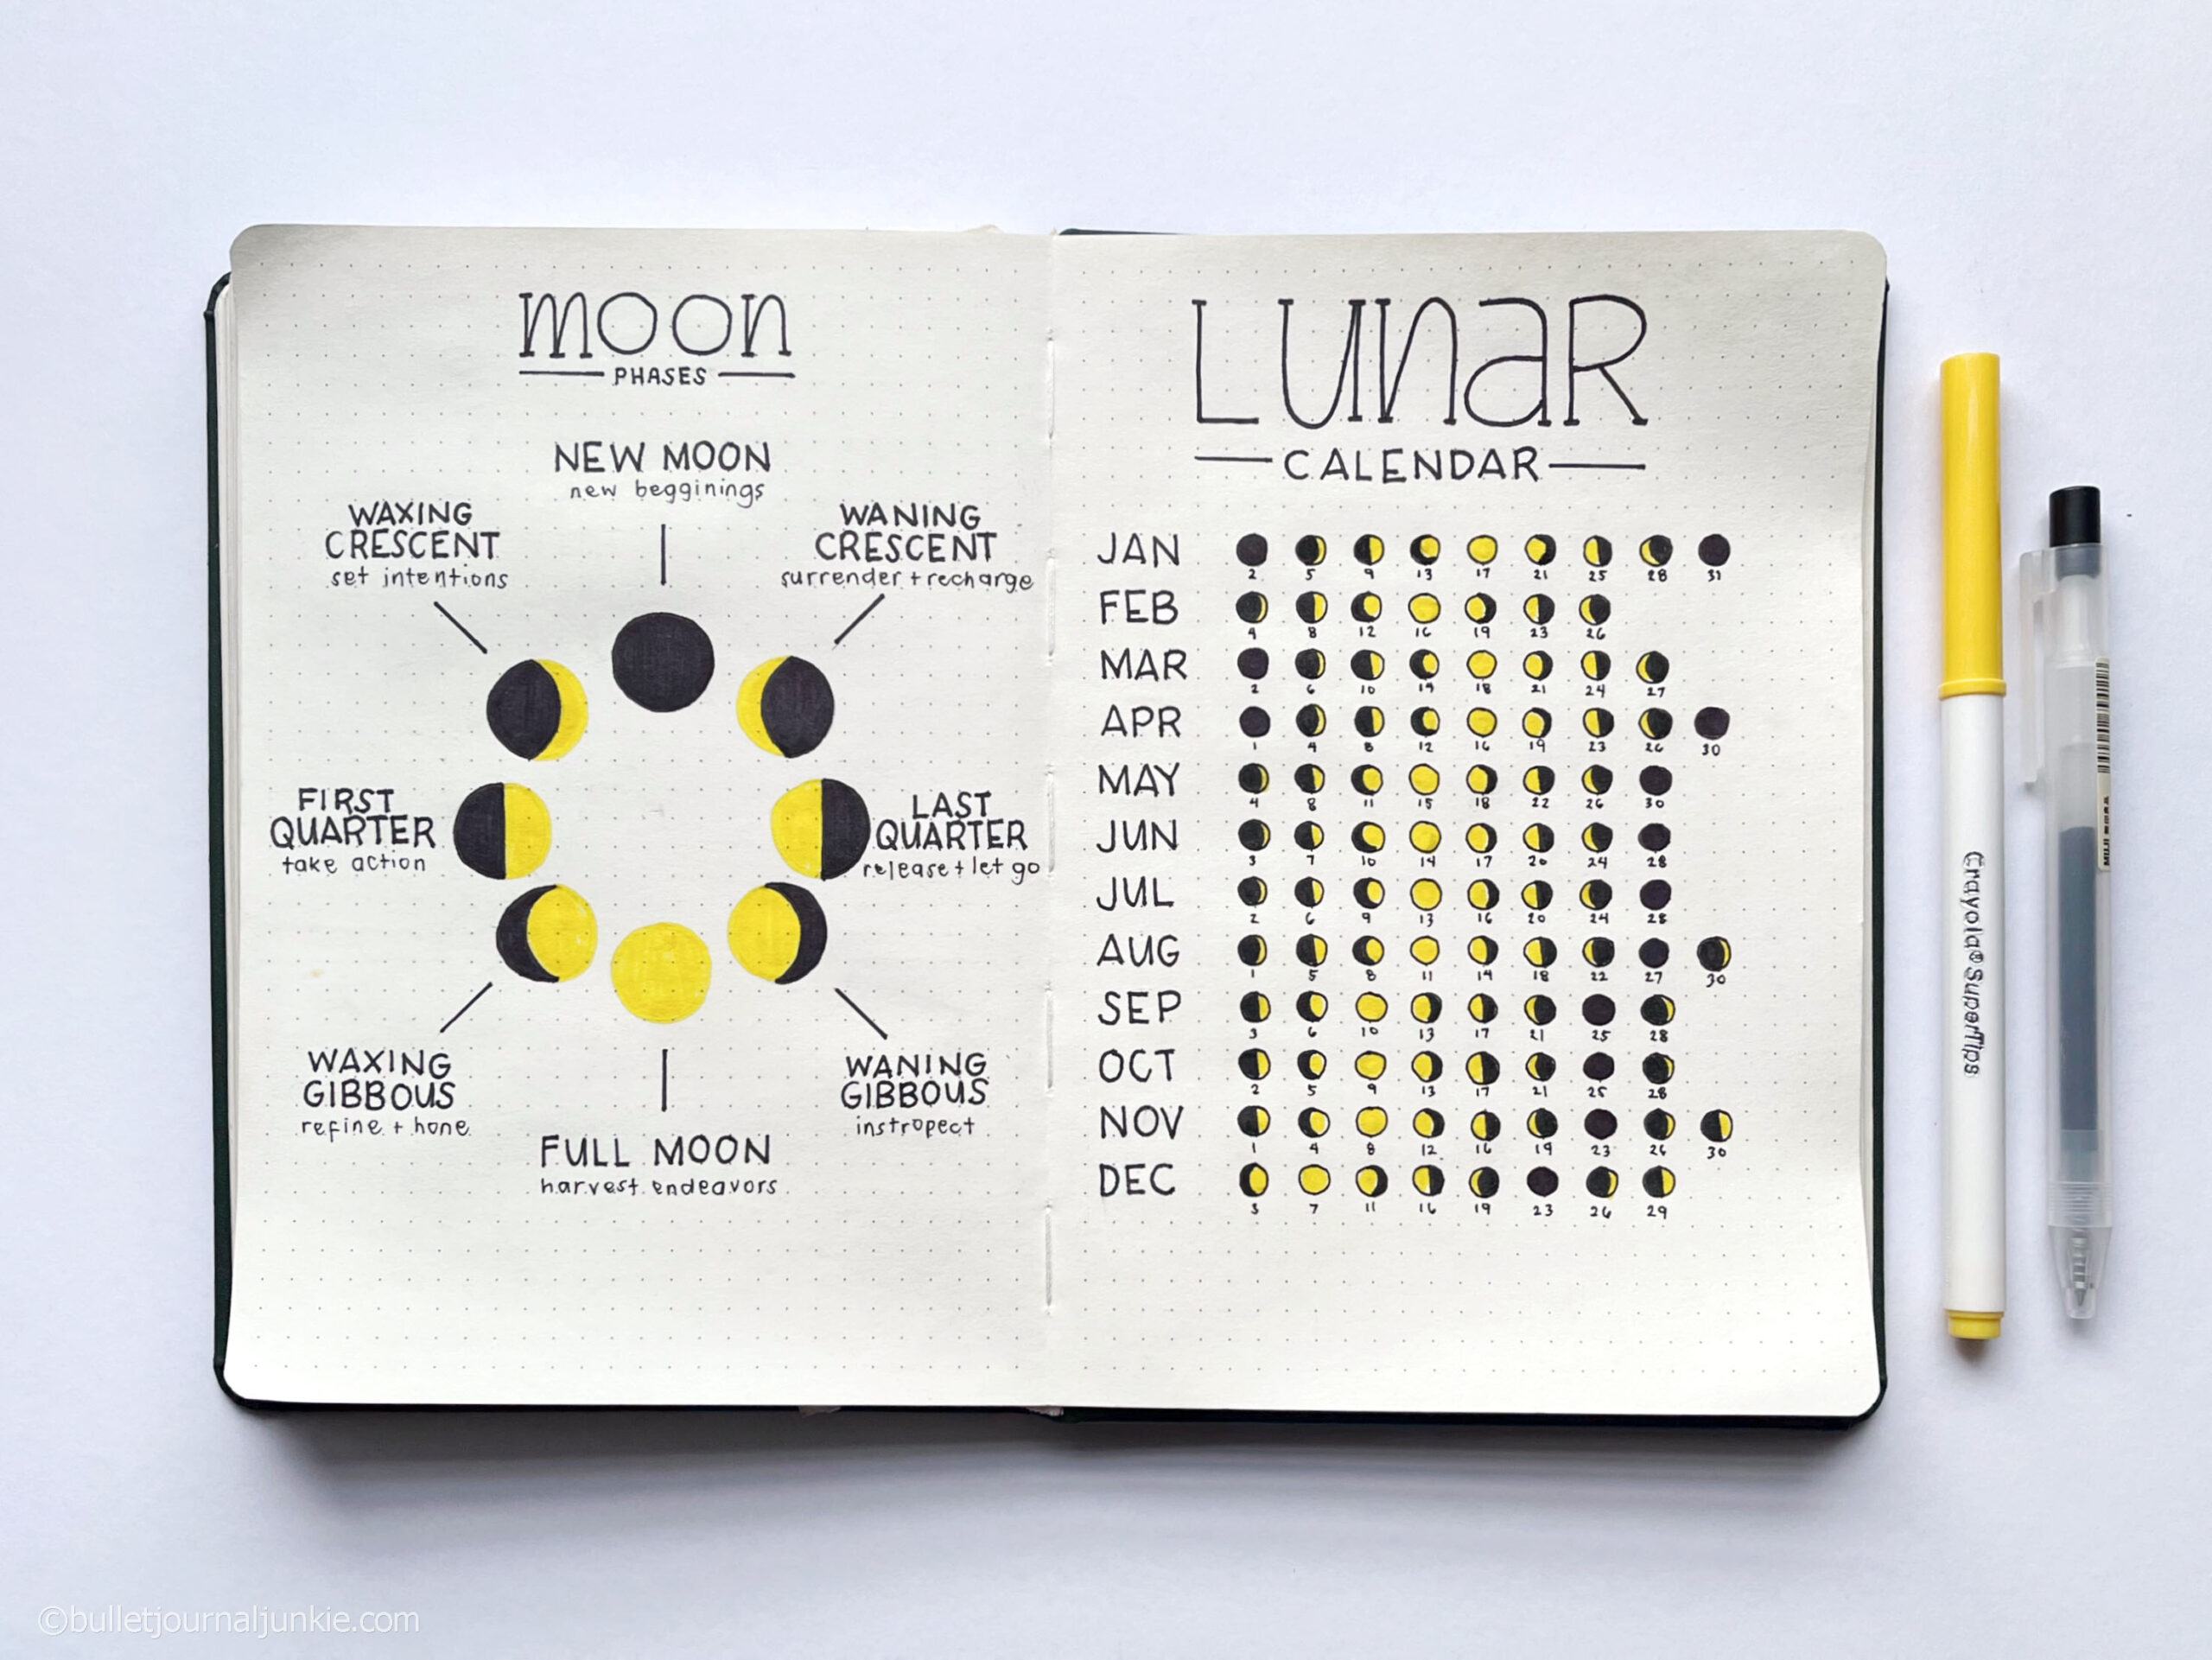 A lunar calendar layout in a bullet journal